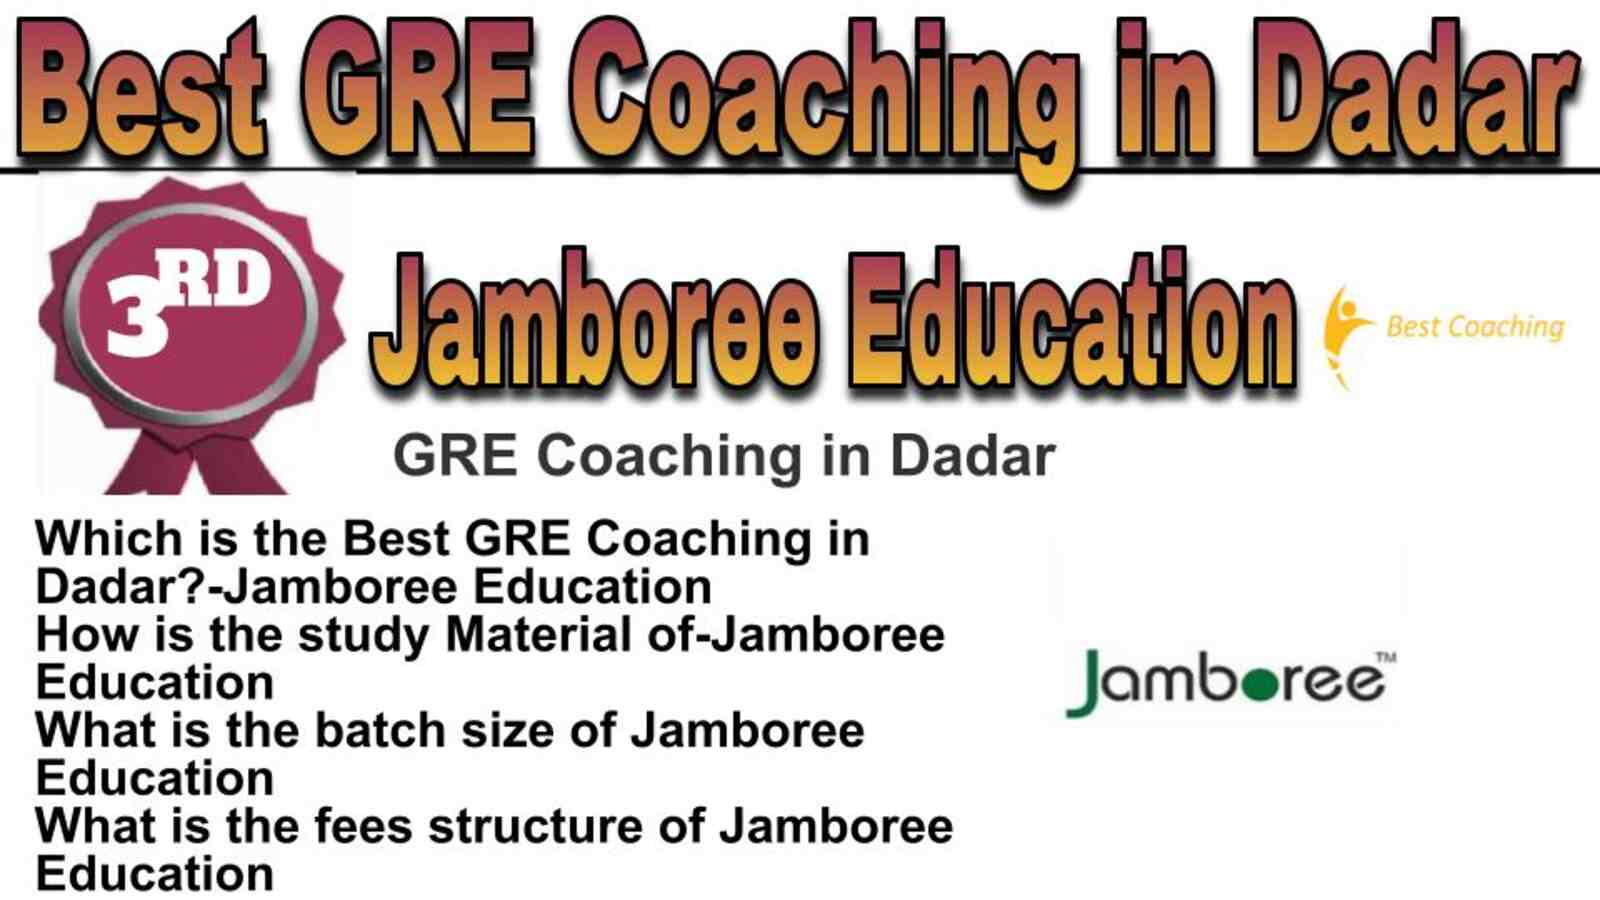 Rank 3 best GRE coaching in Dadar